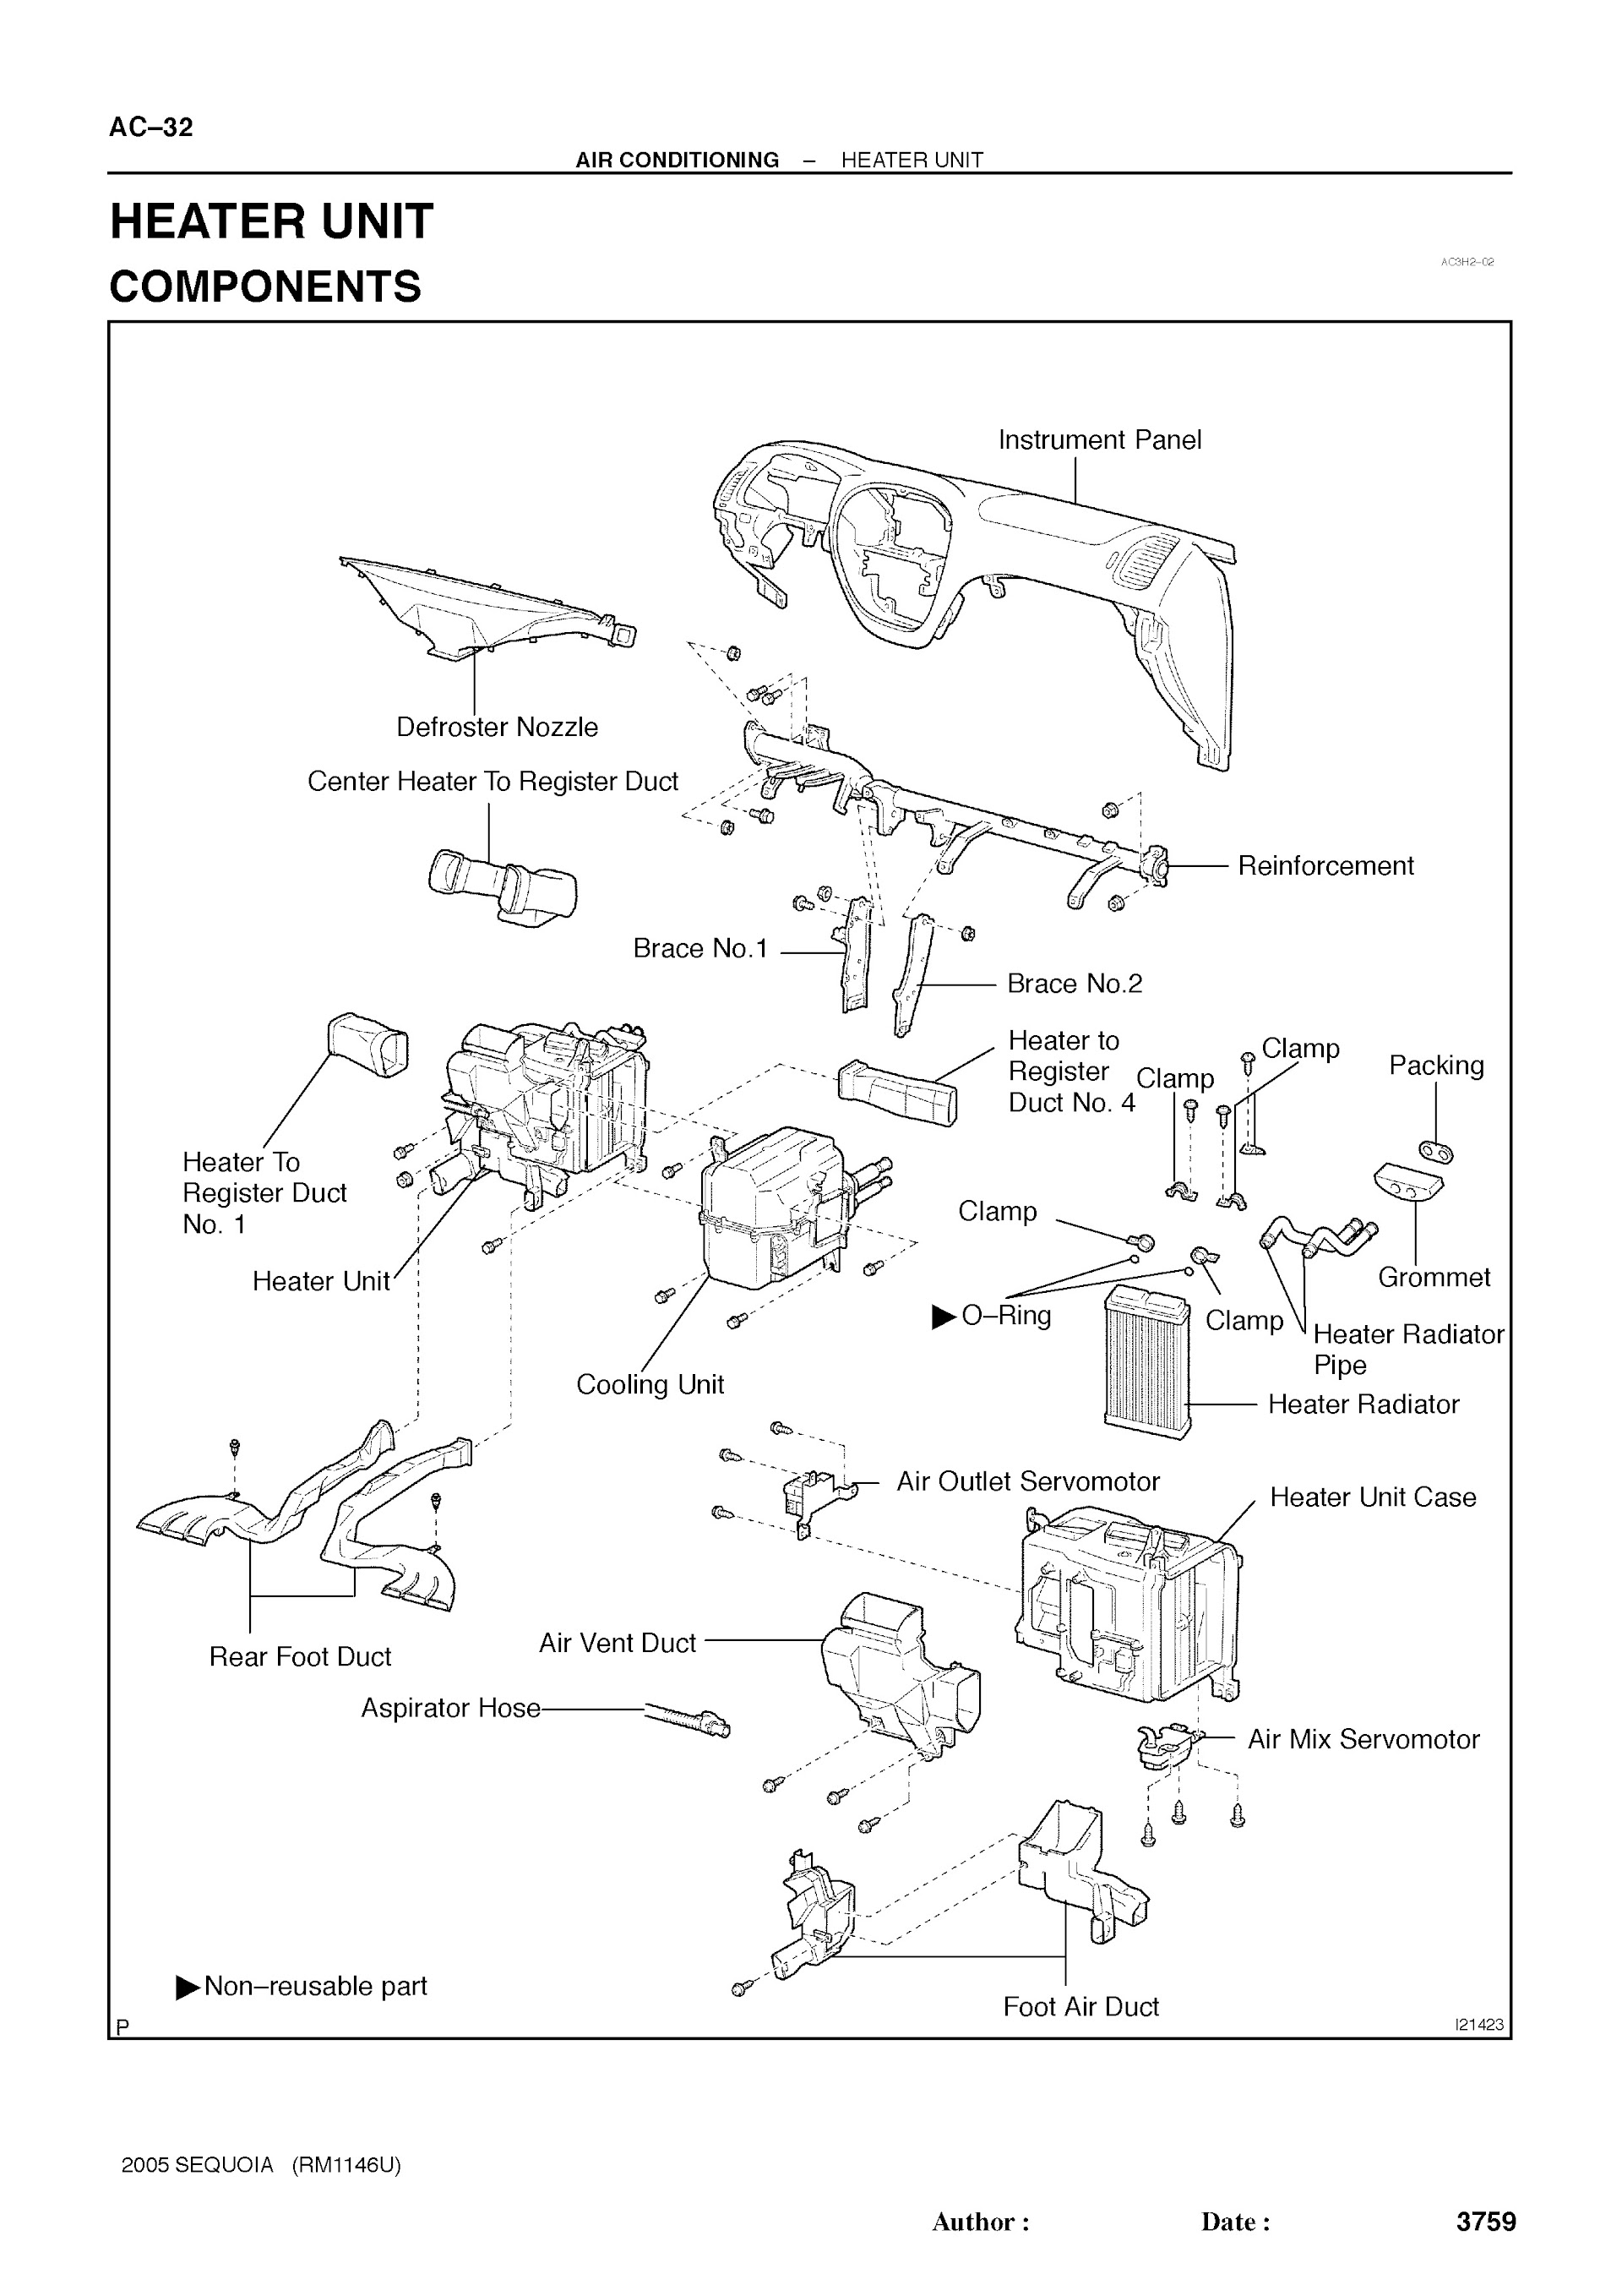 2007 Toyota Sequoia Repair Manual, Air Conditioning, Heater Unit